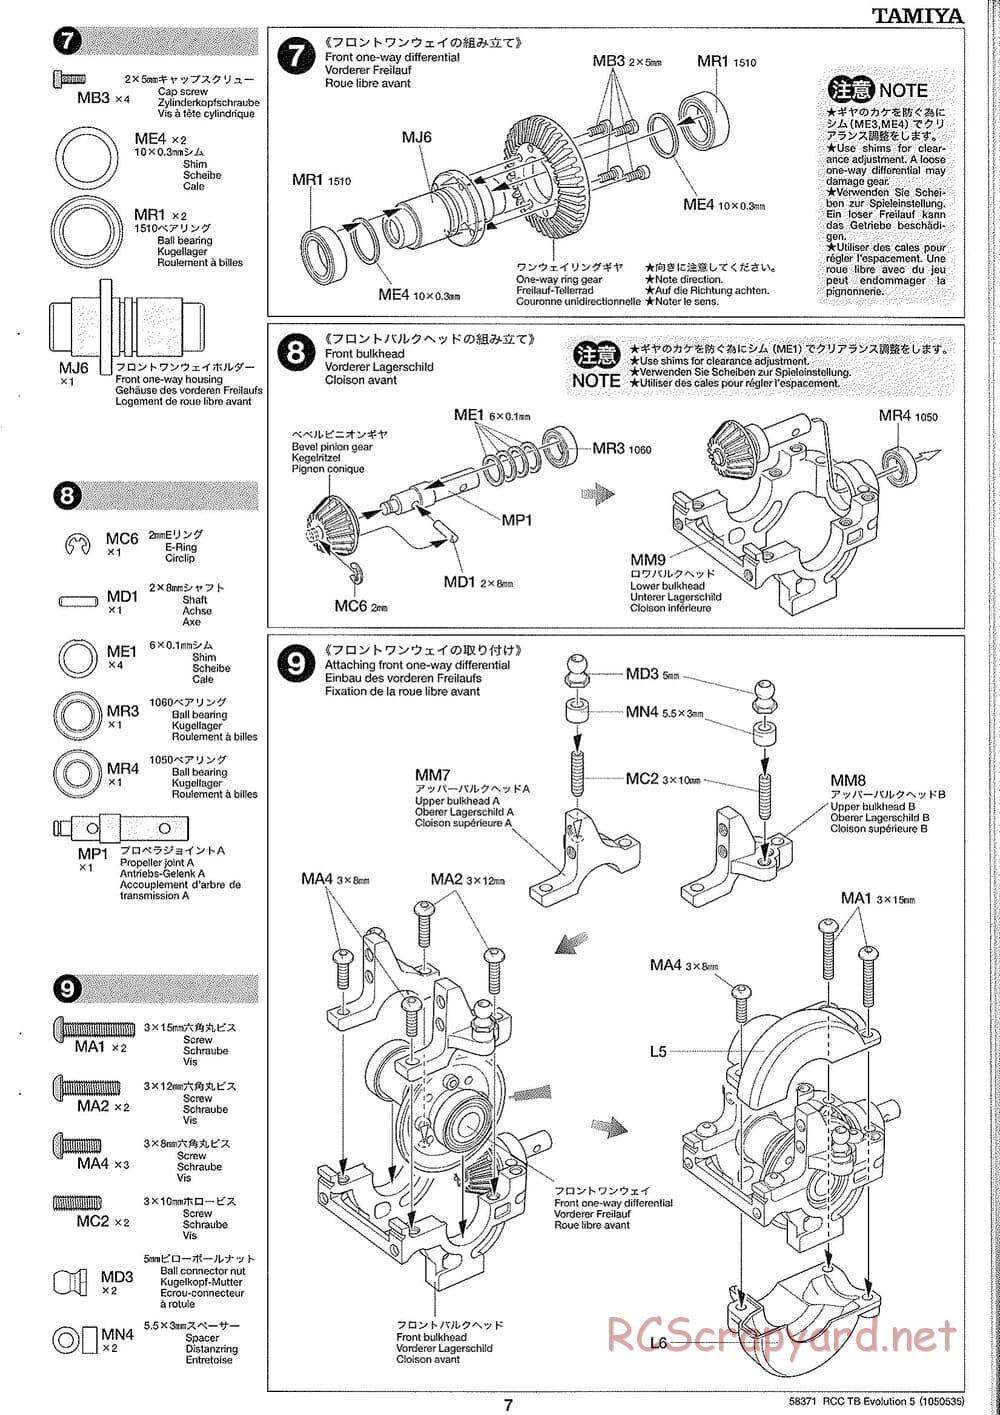 Tamiya - TB Evolution V Chassis - Manual - Page 7